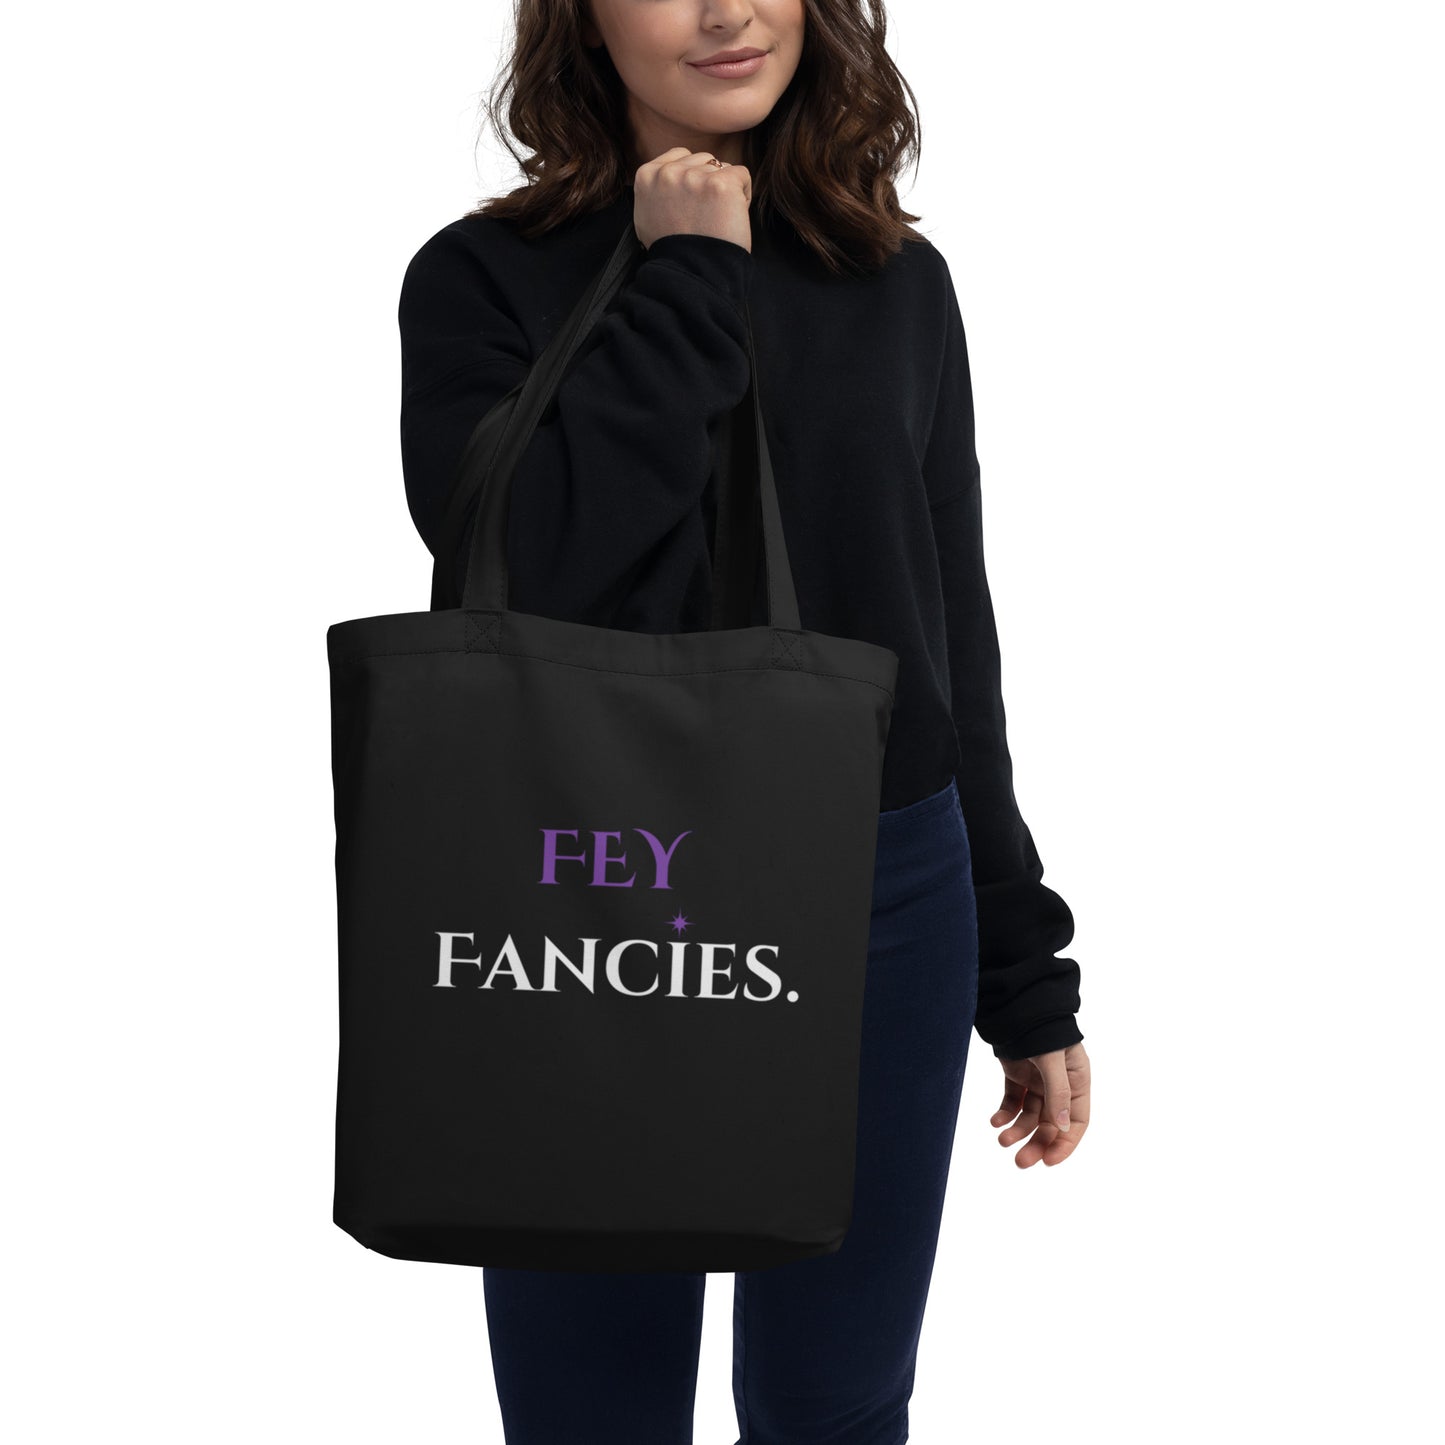 FEY Fancies Black Eco Tote Bag